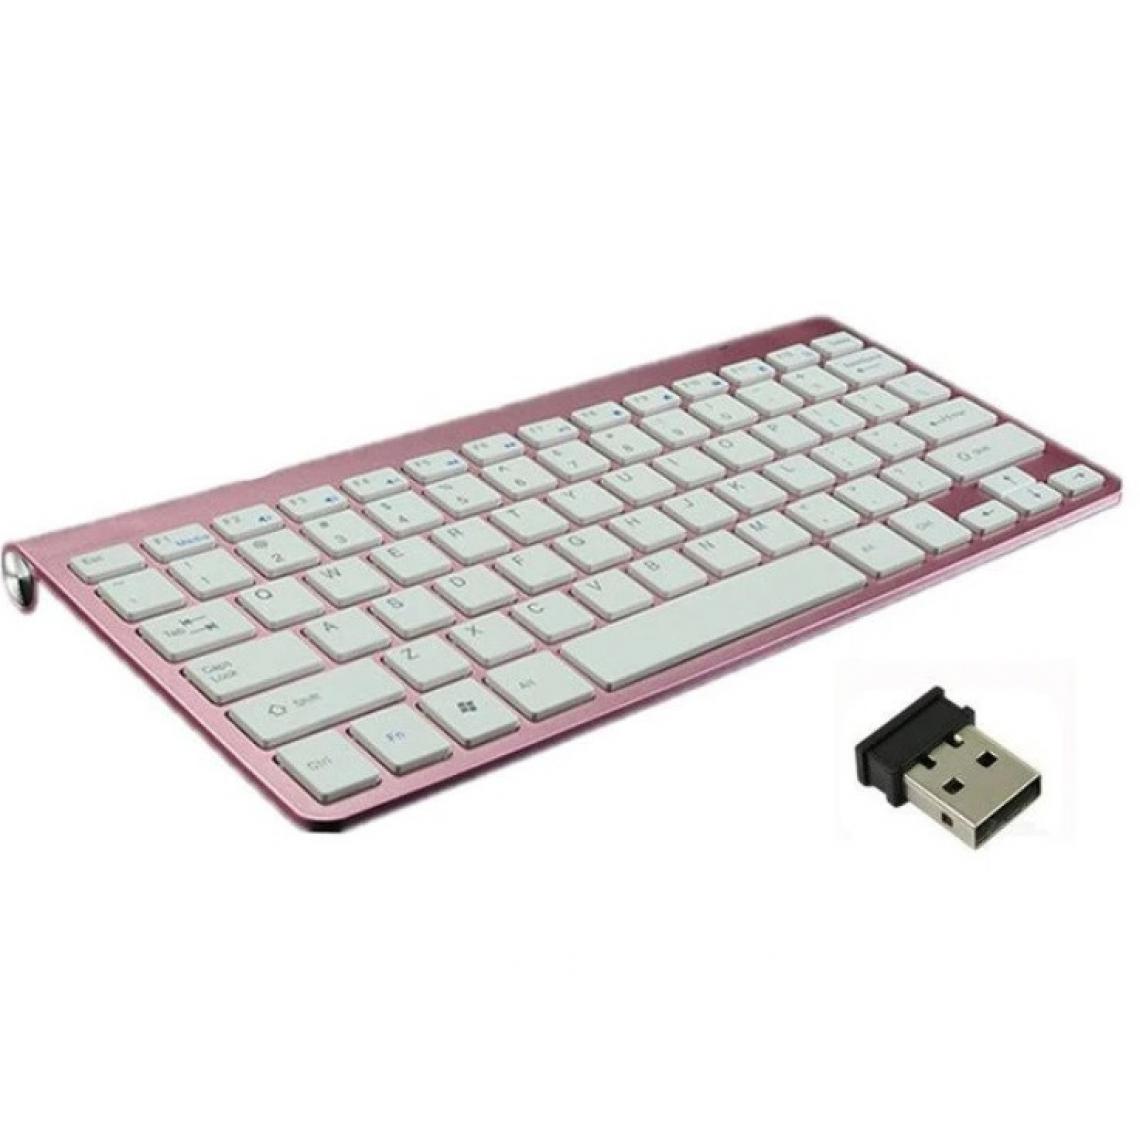 Shot - Clavier Sans Fil Metal pour PC GIGABYTE USB QWERTY Piles (ROSE) - Clavier